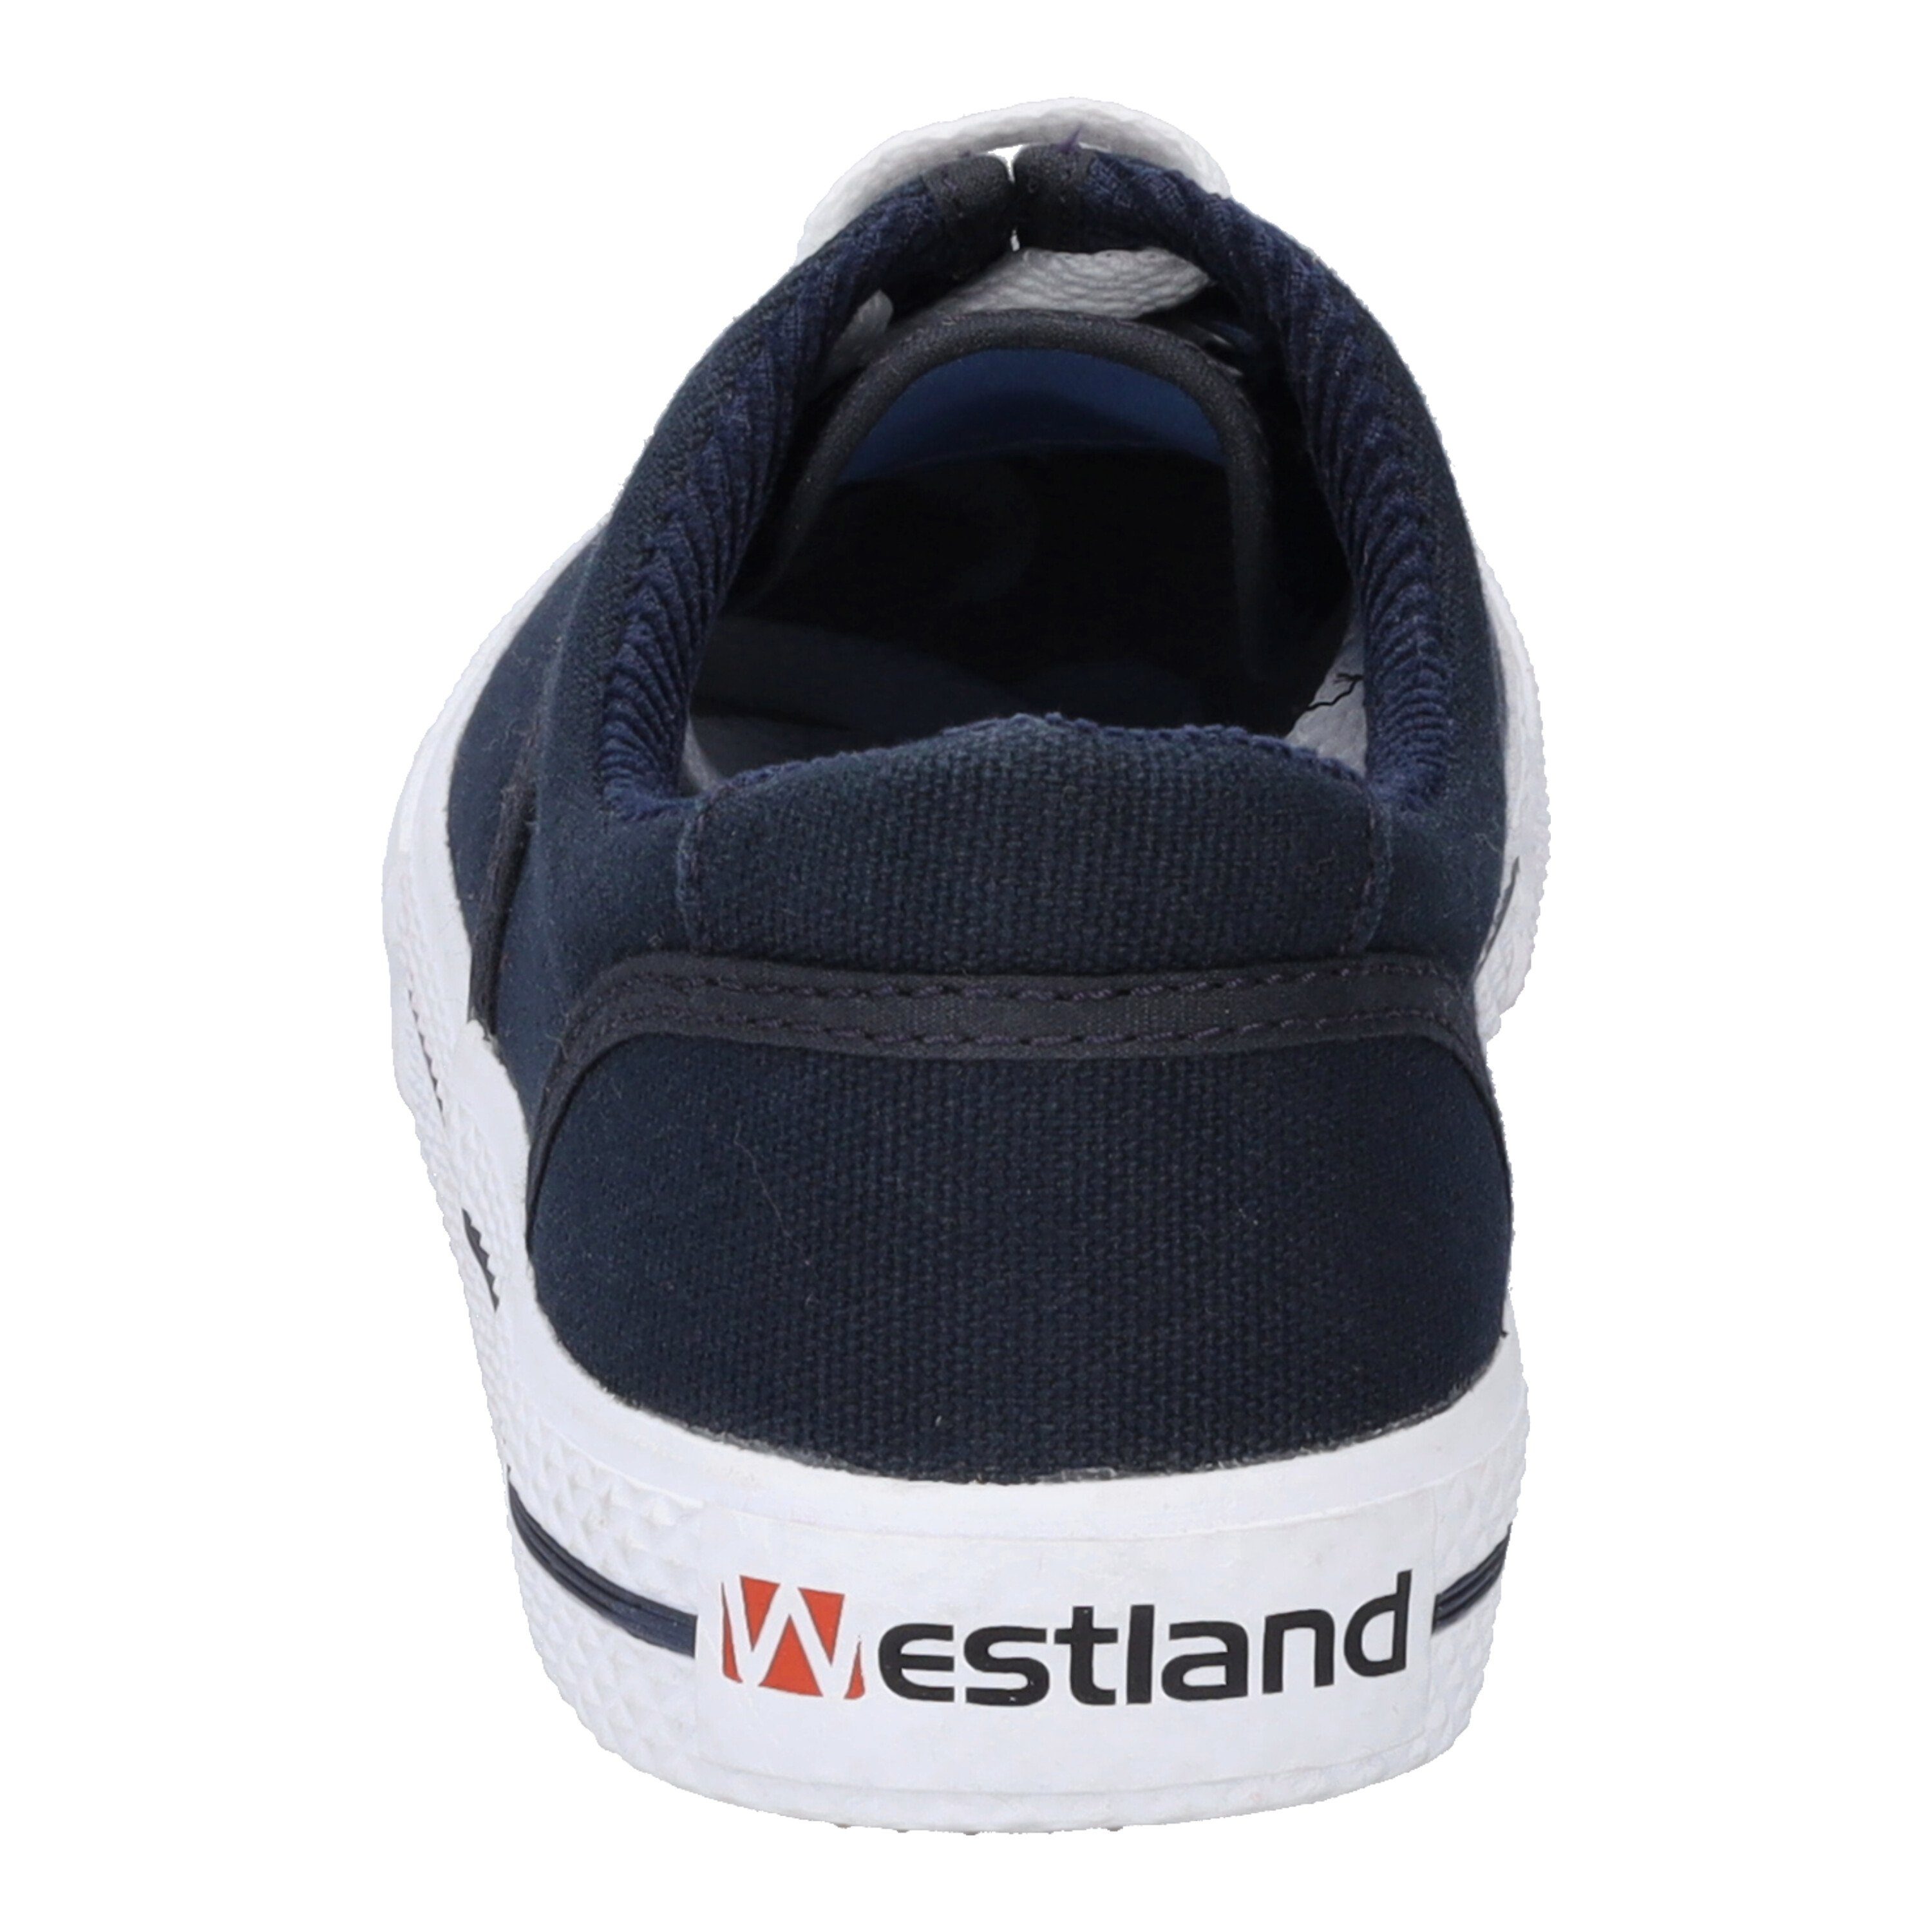 Westland Soling, Sneaker blau